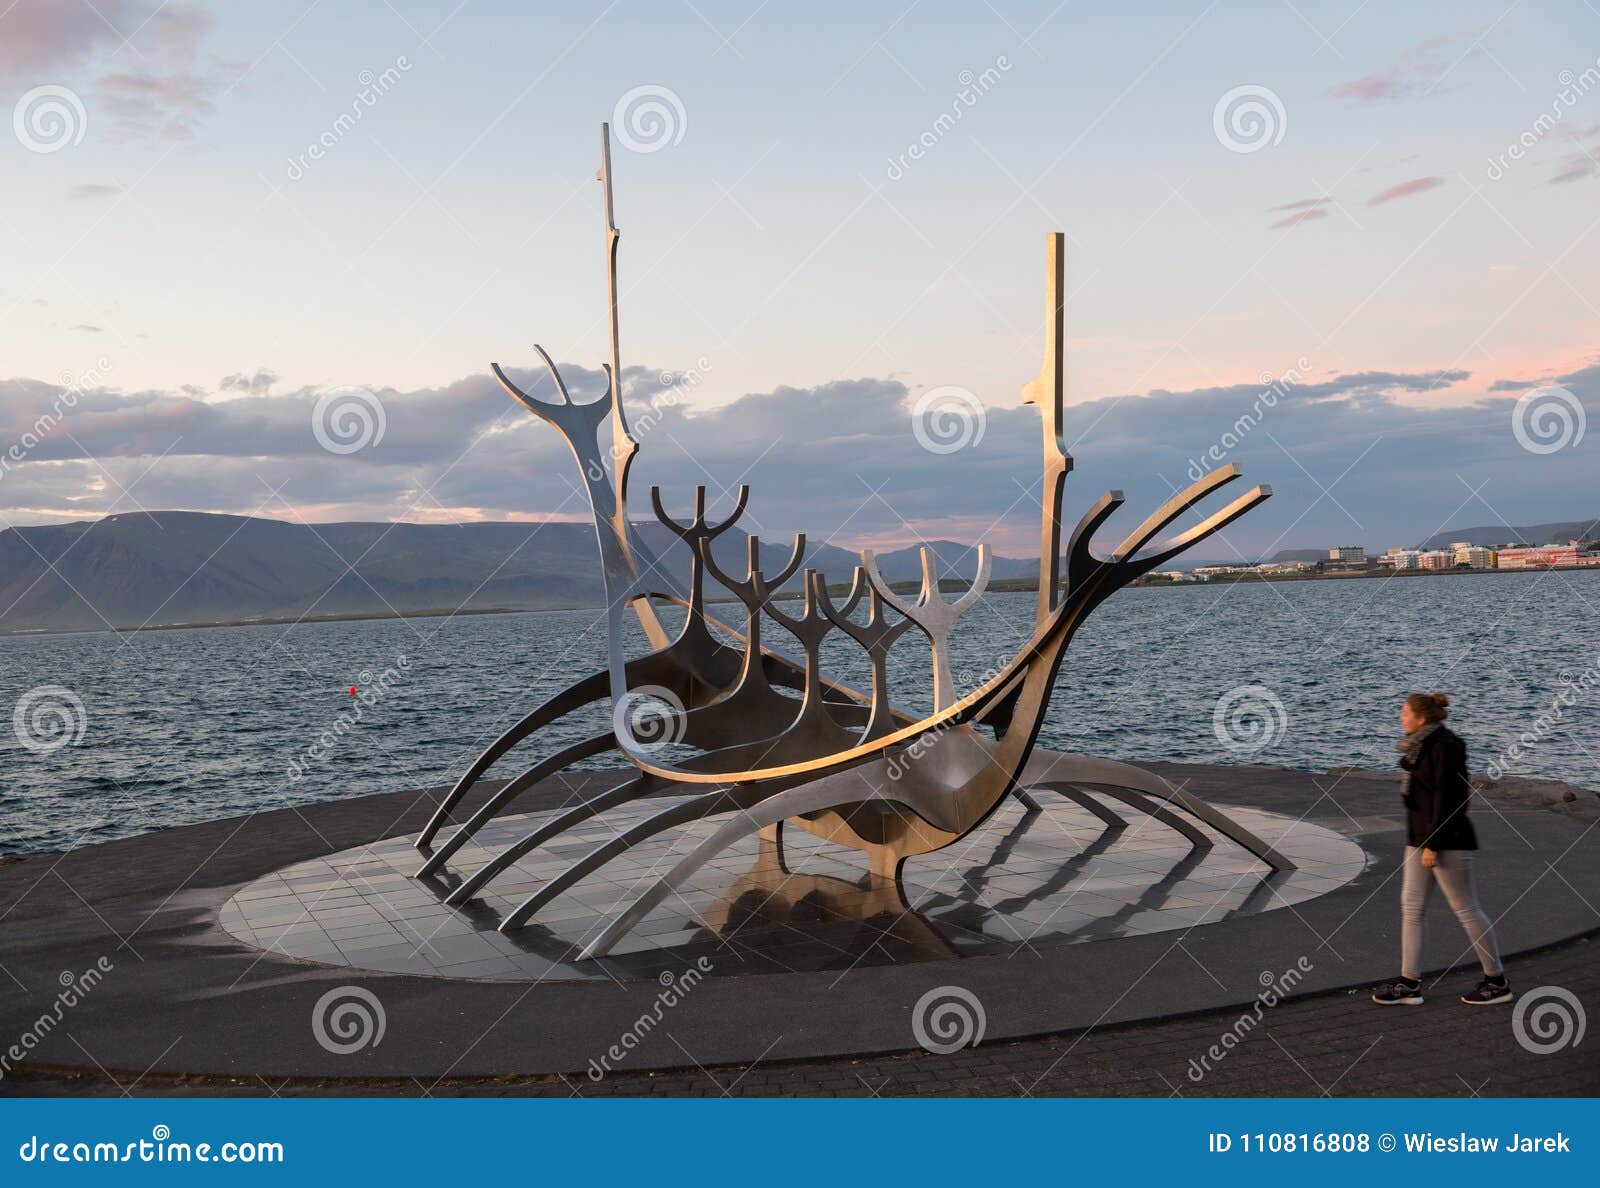 modern-metal-sculpture-resembling-to-viking-long-ship-sun-voyager-reykjavik-reyklavik-iceland-july-modern-metal-sculpture-110816808.jpg